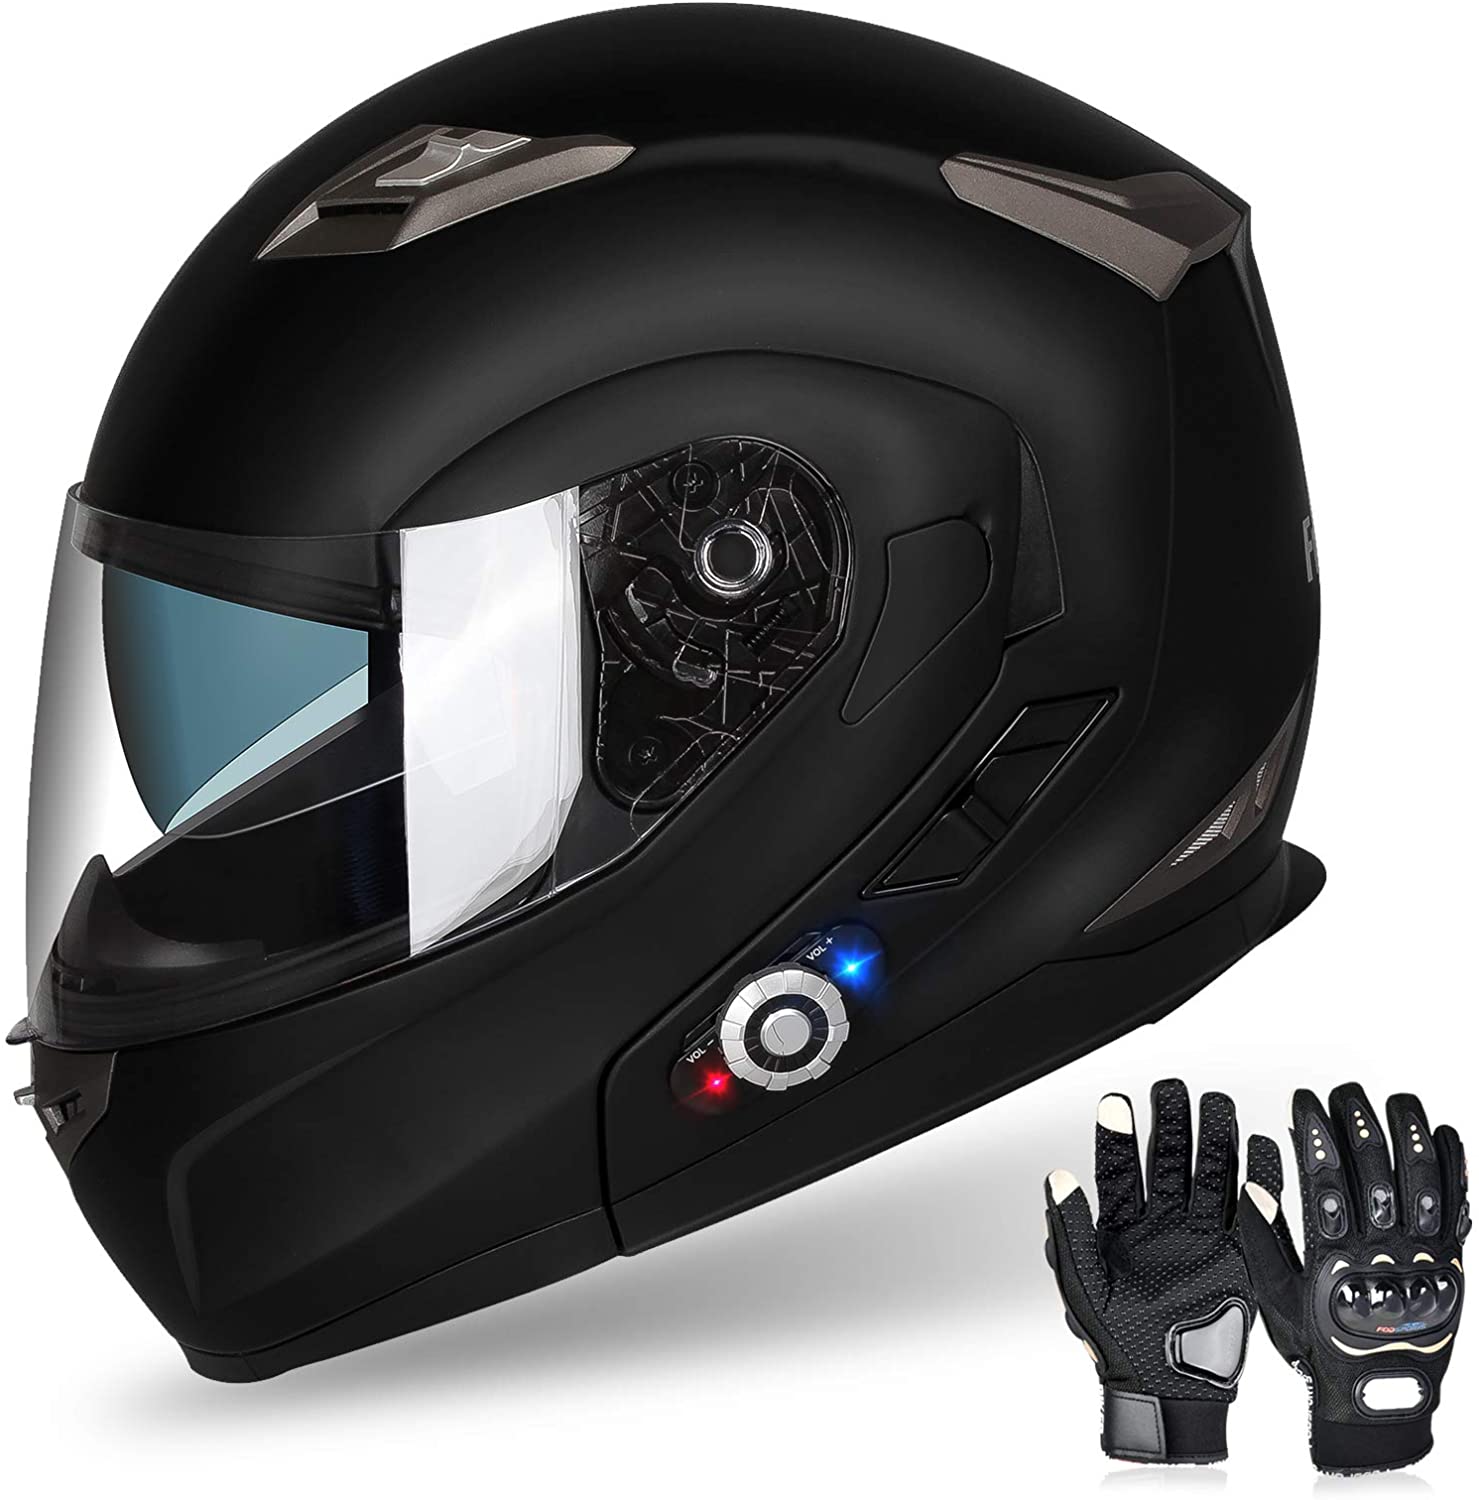 Anti-Glare Flip Up Visors Modular Bluetooth Integrated Helmets for Adult Men and Women DCLINA Full Face Motorcycle Helmet Blue DOT Certified Street Bike Off-Road Motocross Helmet 55-64cm 